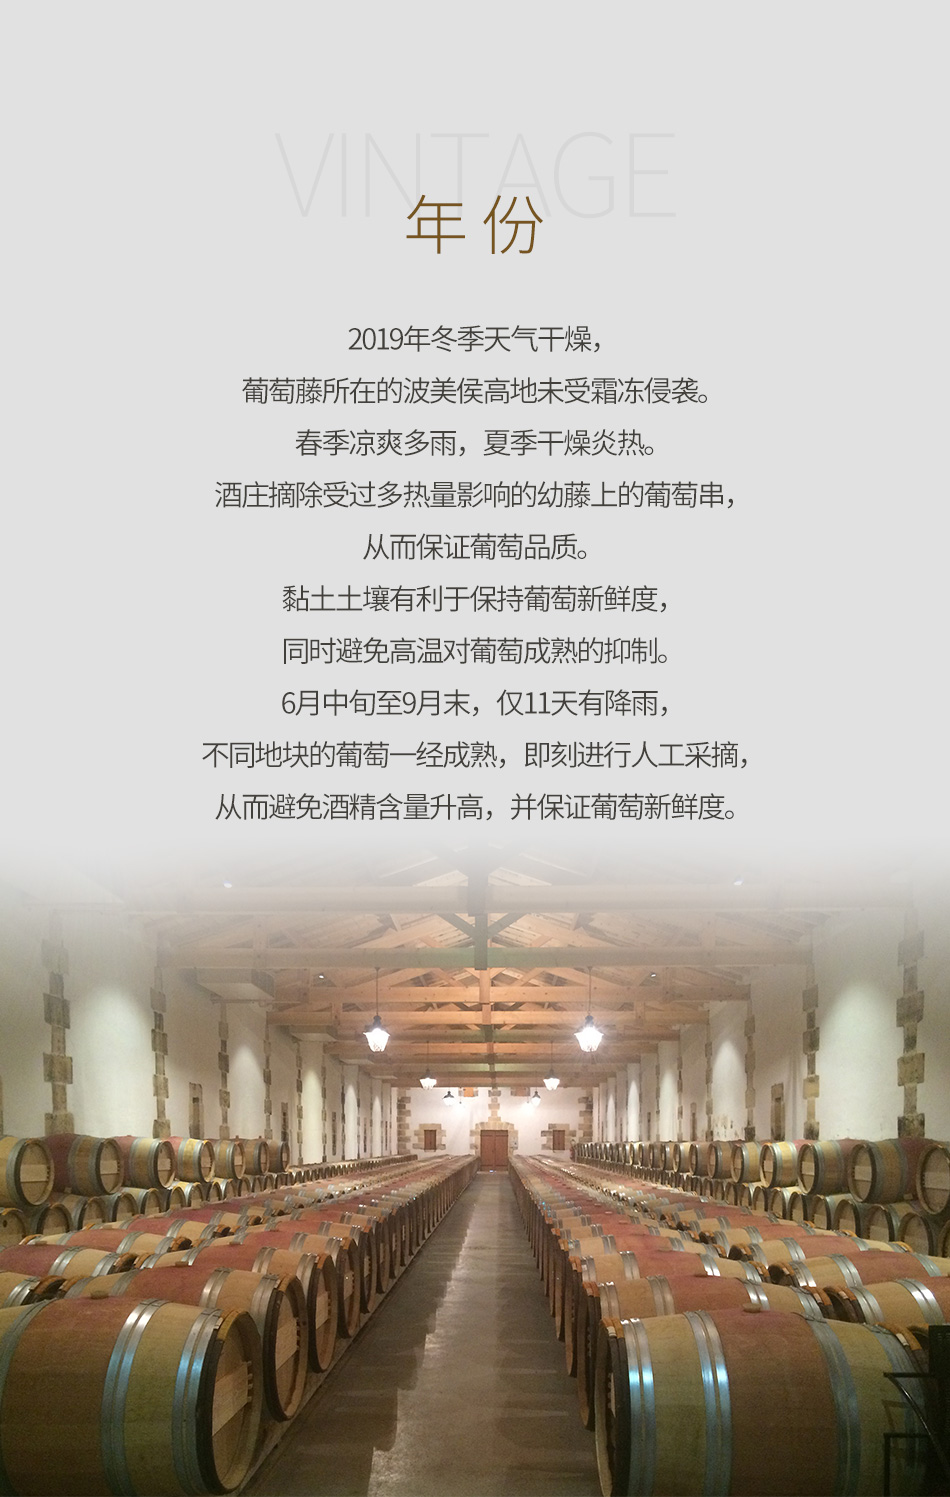 2019年嘉仙酒庄红葡萄酒